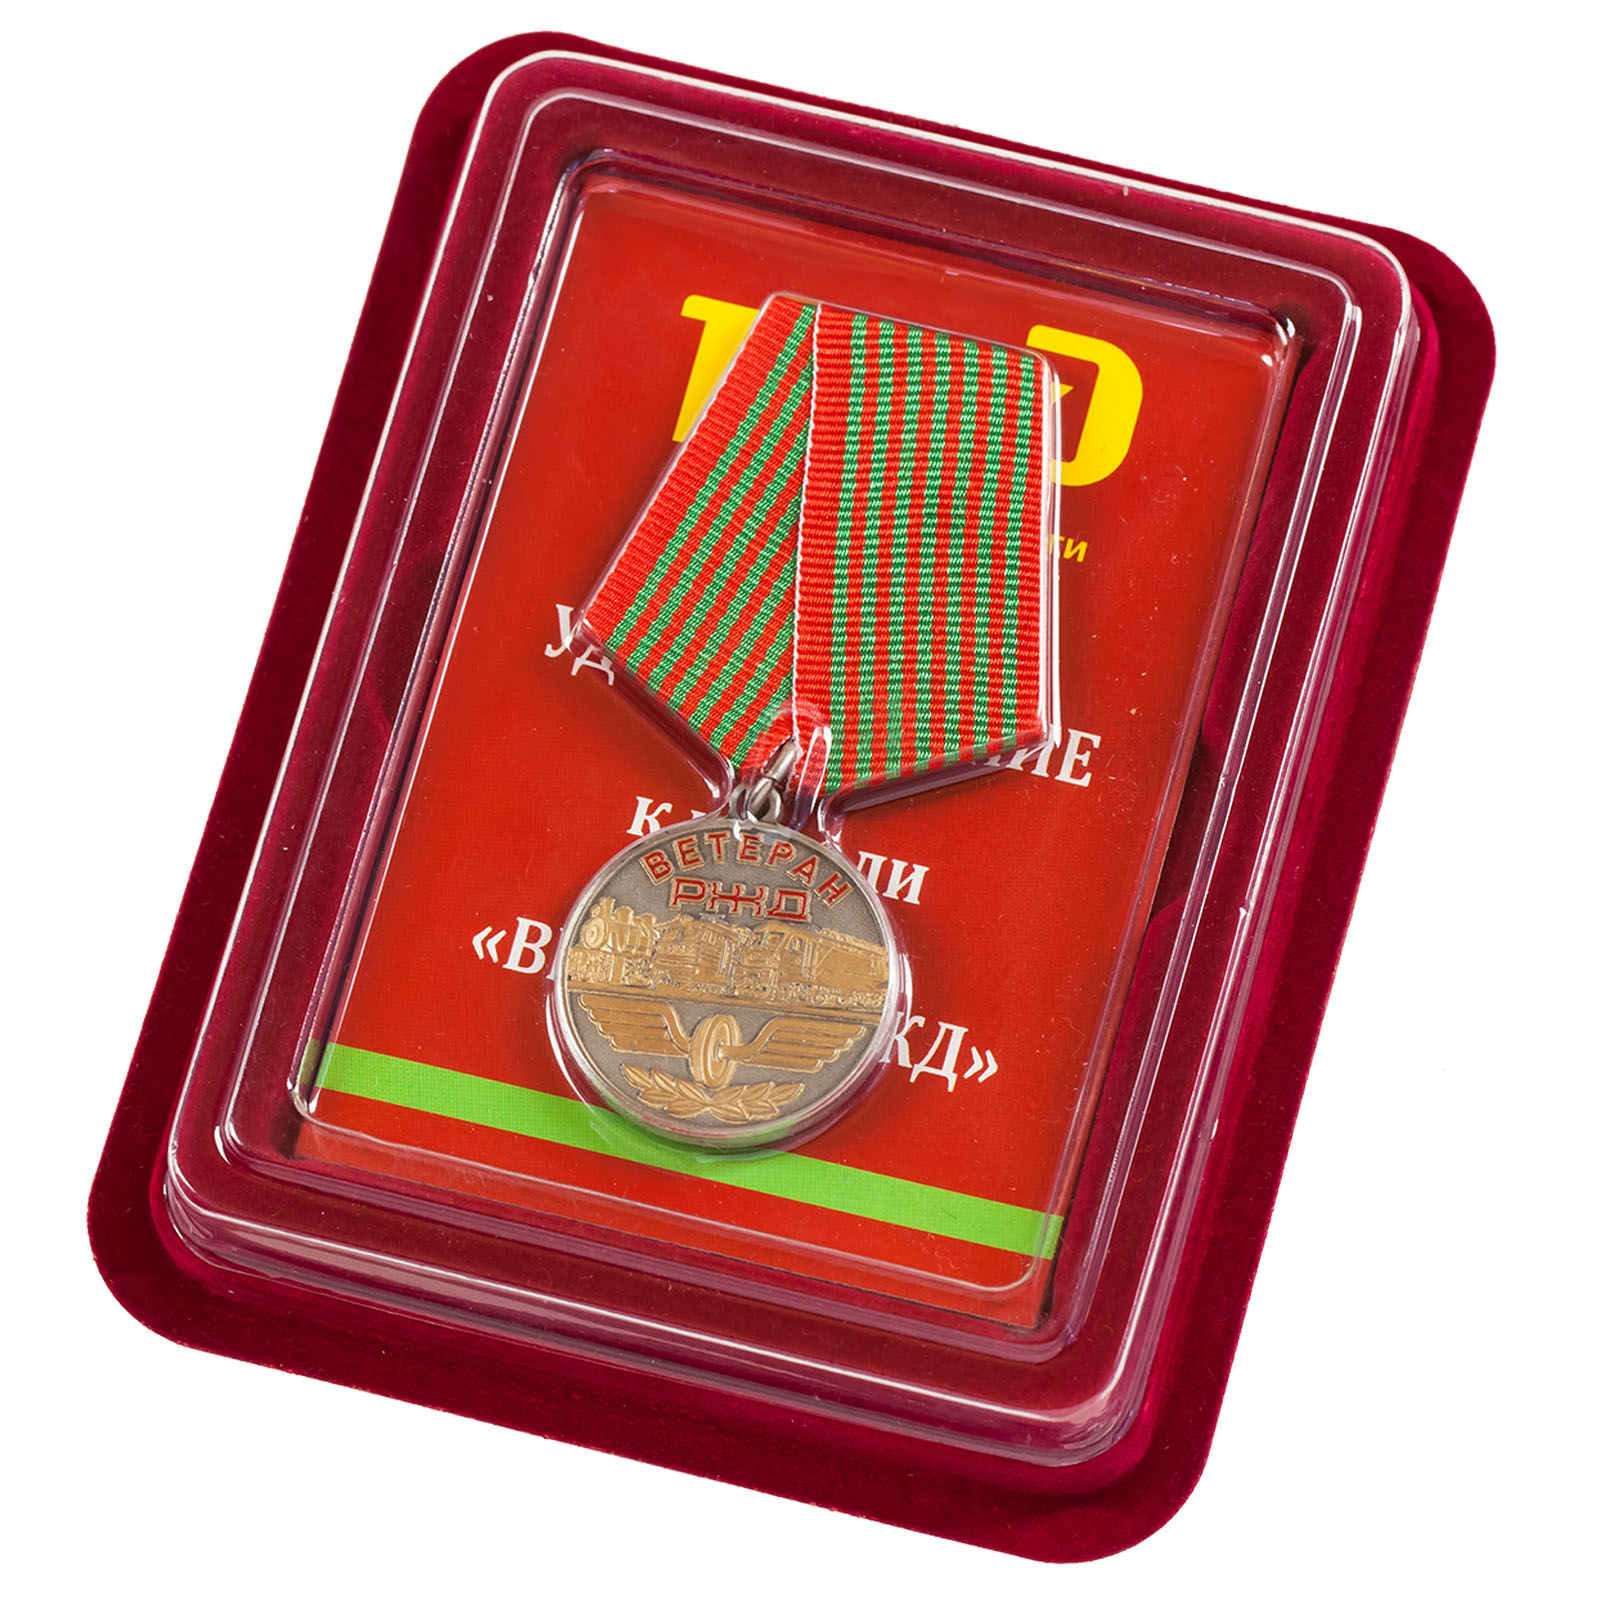 Купить медаль РЖД "Ветеран" в солидном футляре по лучшей цене